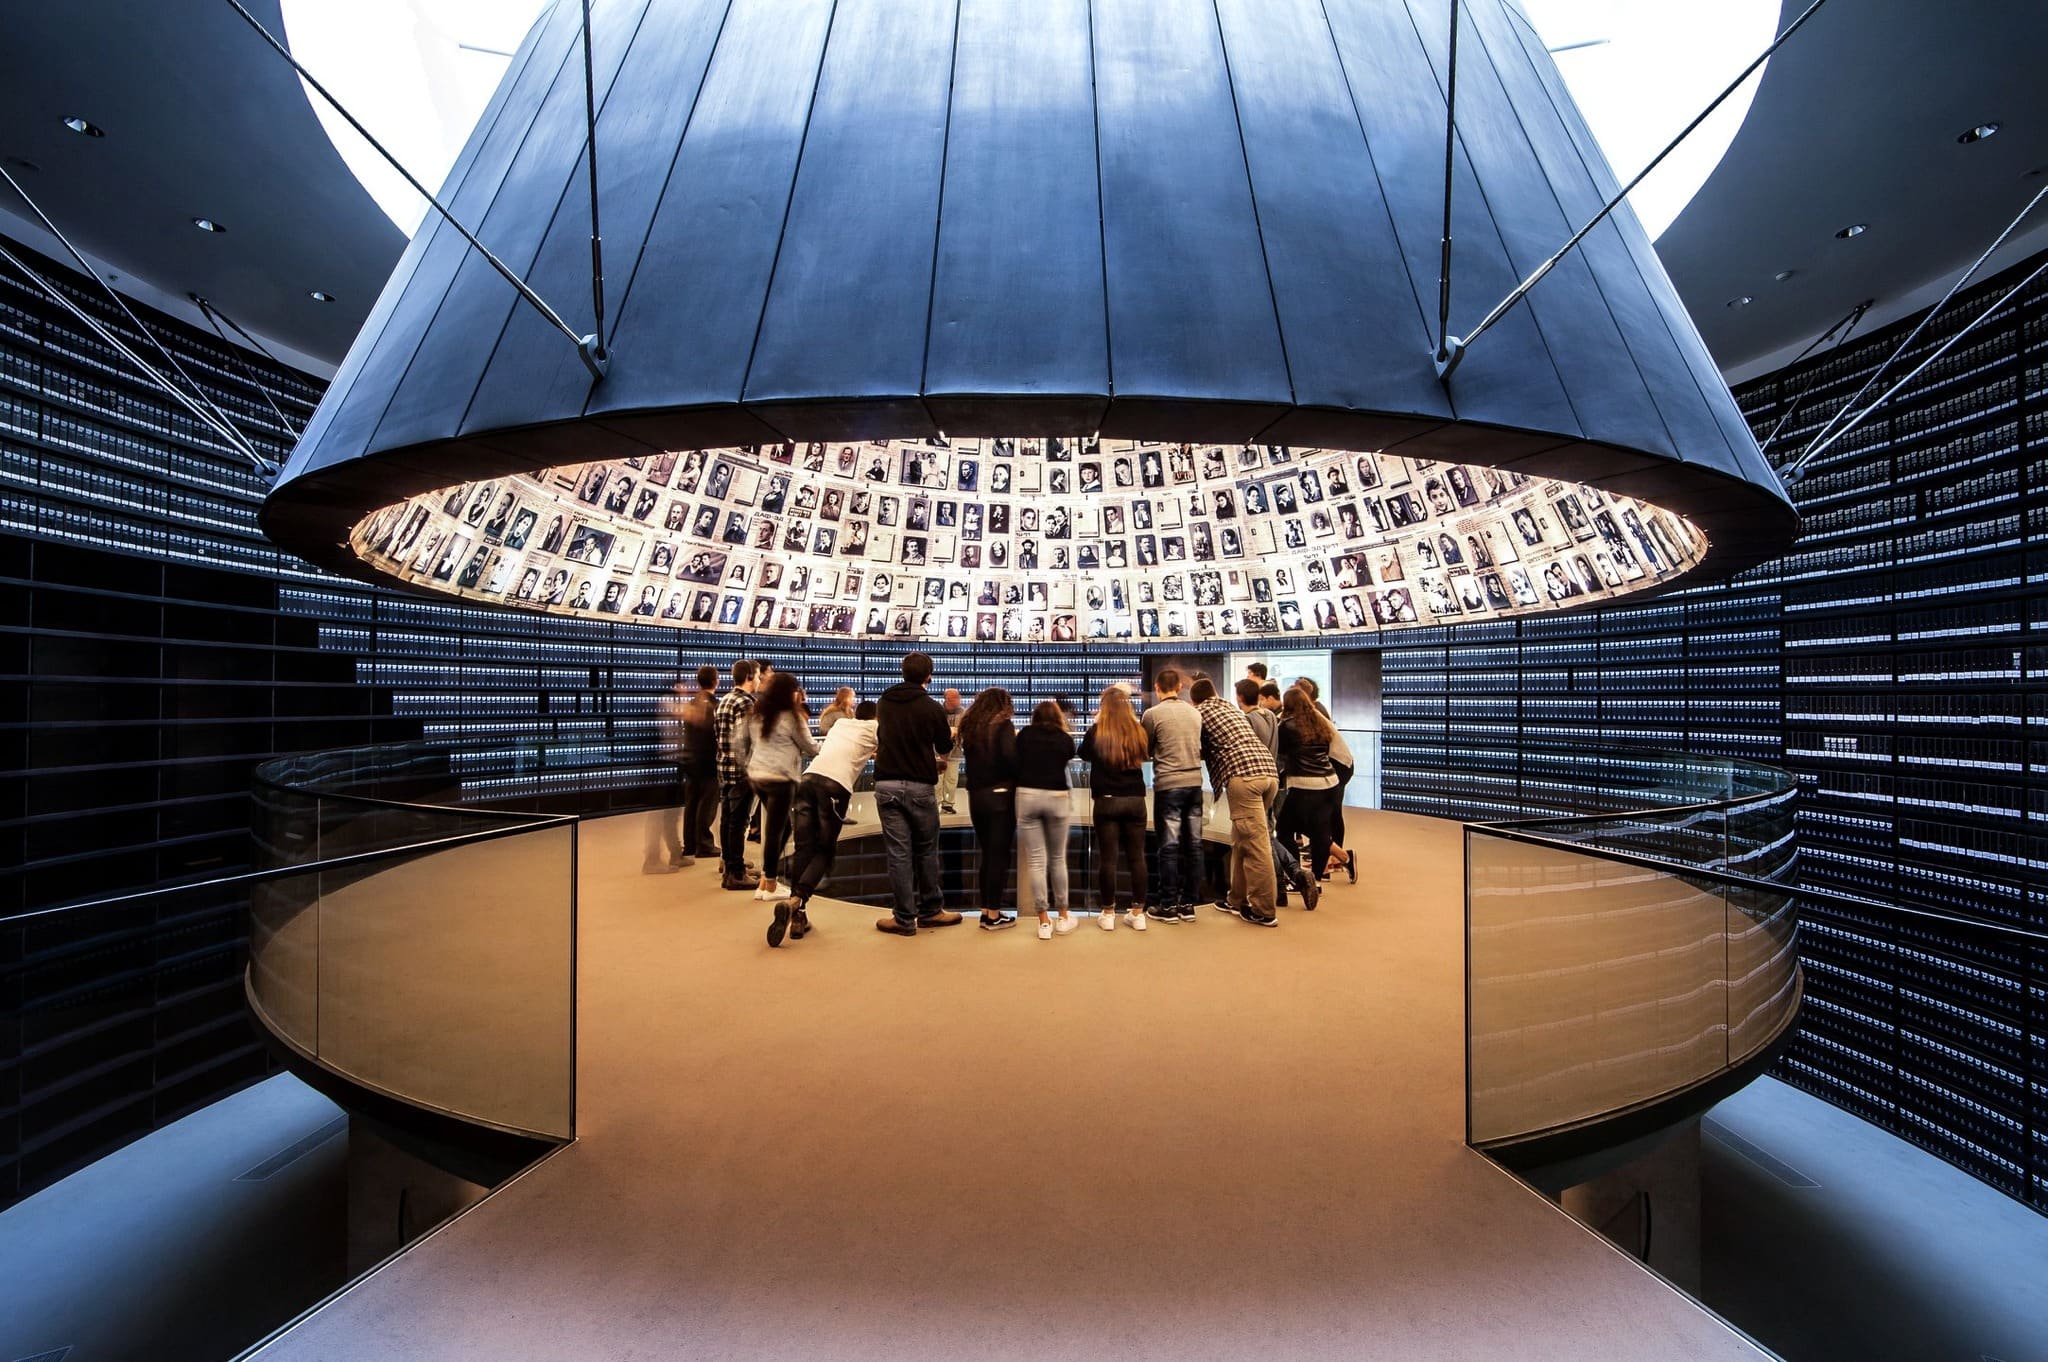 מוזיאון השואה בירושלים ועוד סיורים לימודיים ליום השואה בעיר